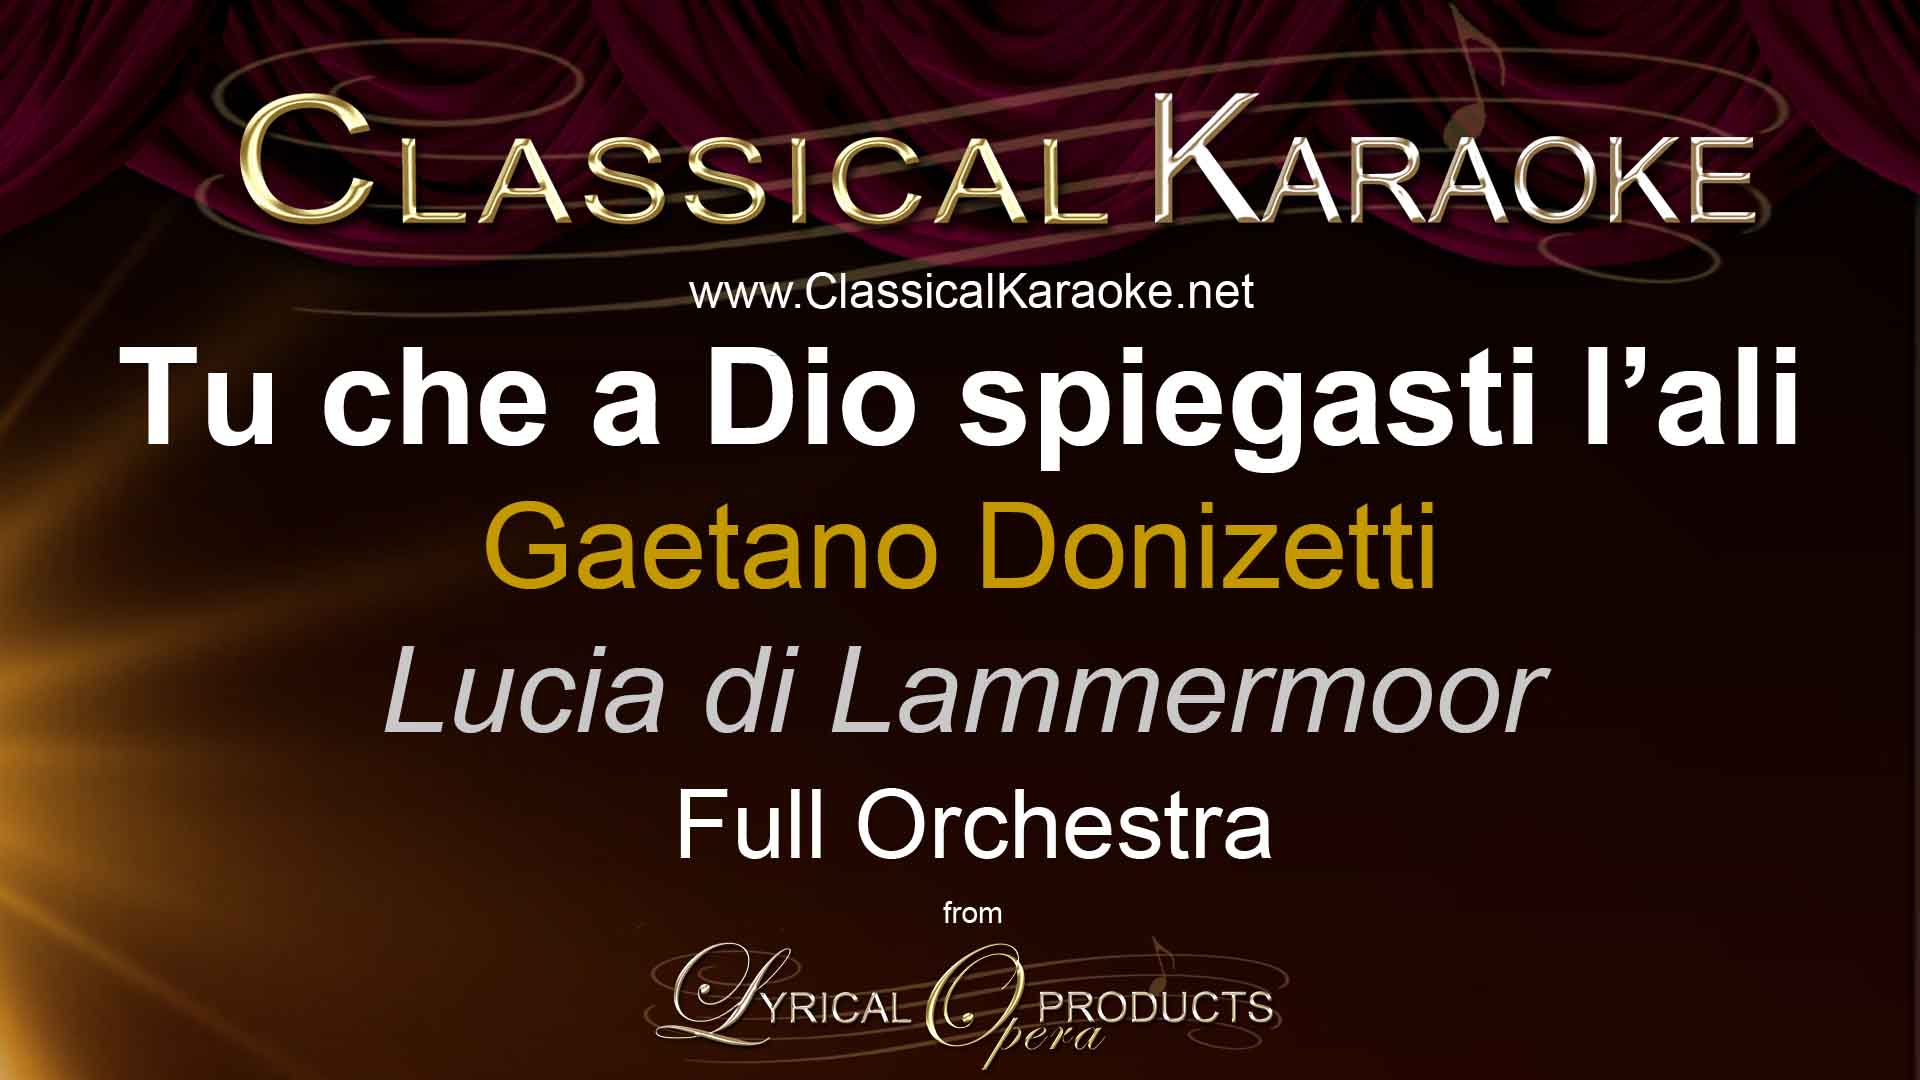 Tu che a Dio spiegasti l'ali, from Lucia di Lammermoor, by Donizetti, Full Orchestral Accompaniment (karaoke) track